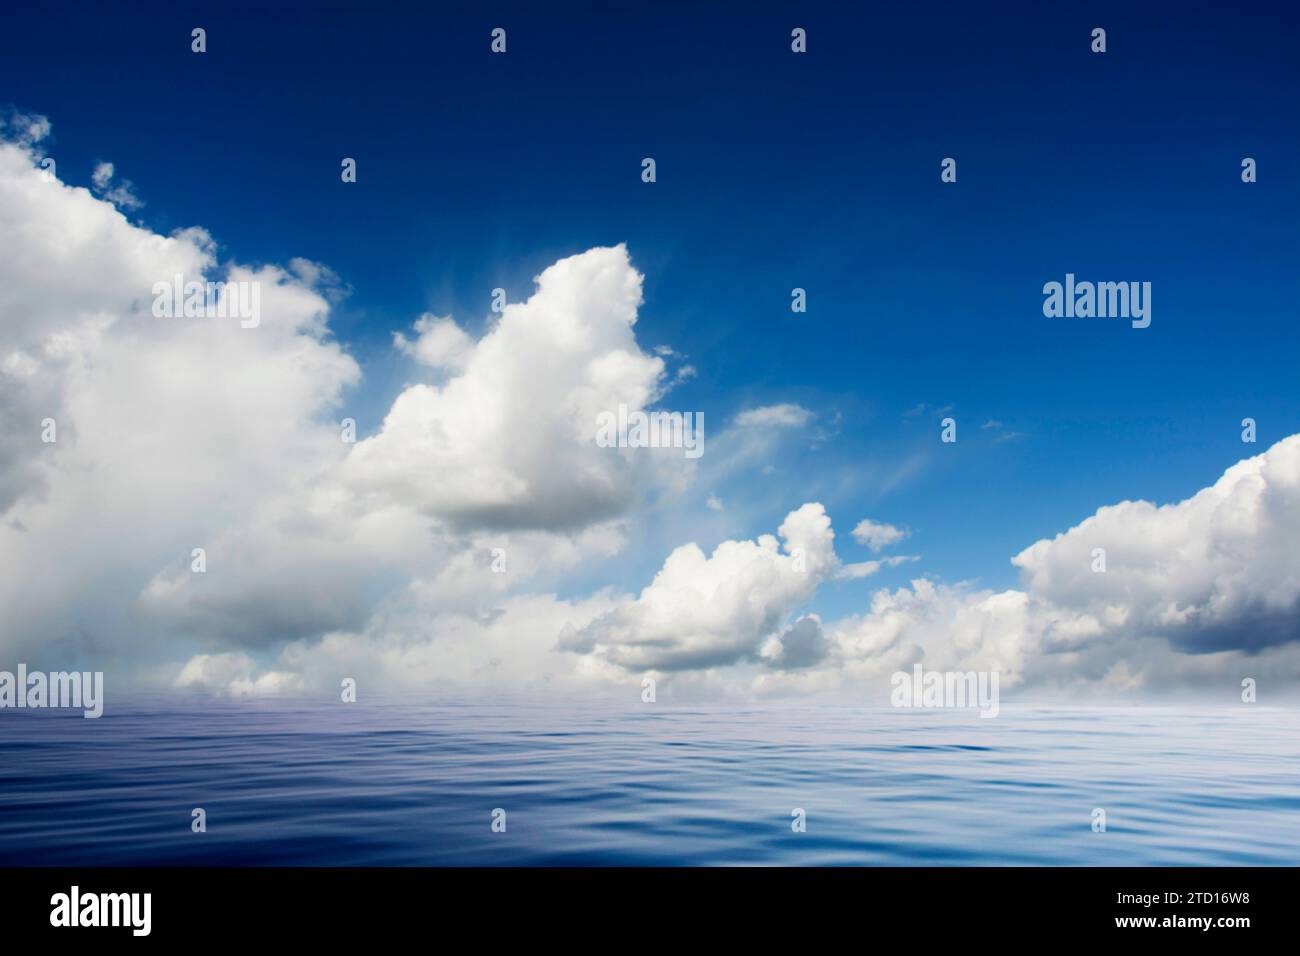 mare calmo e cielo azzurro con nuvole bianche piumose Foto Stock